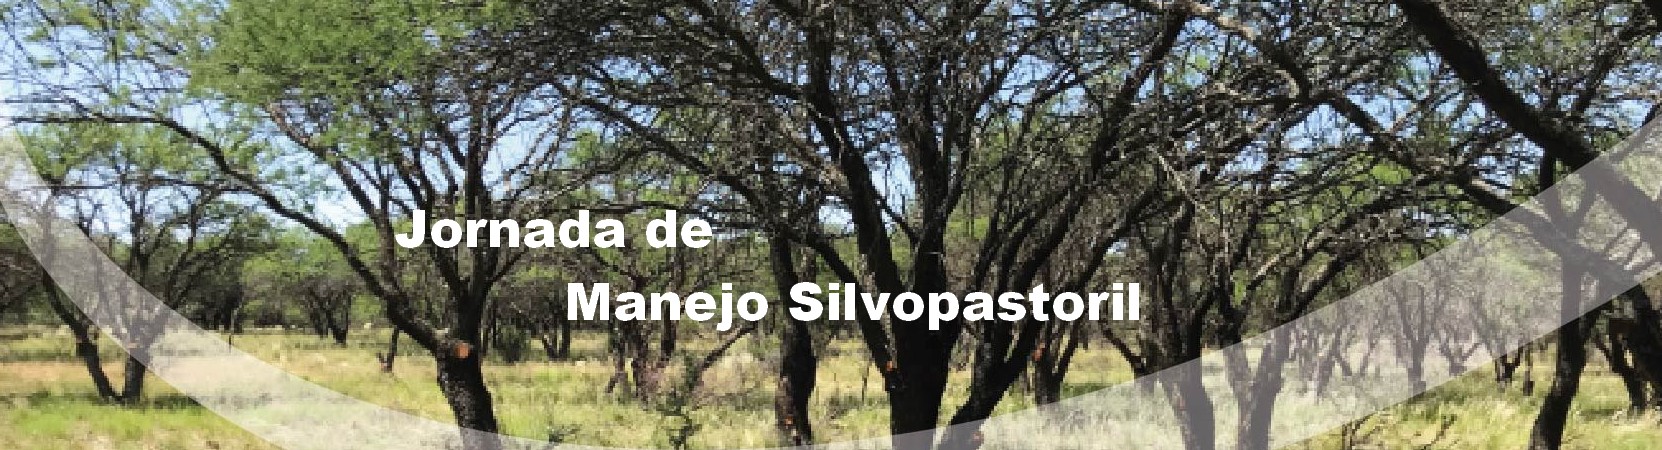 Invitación Jornada de Manejo Silvopastoril_abril 2018